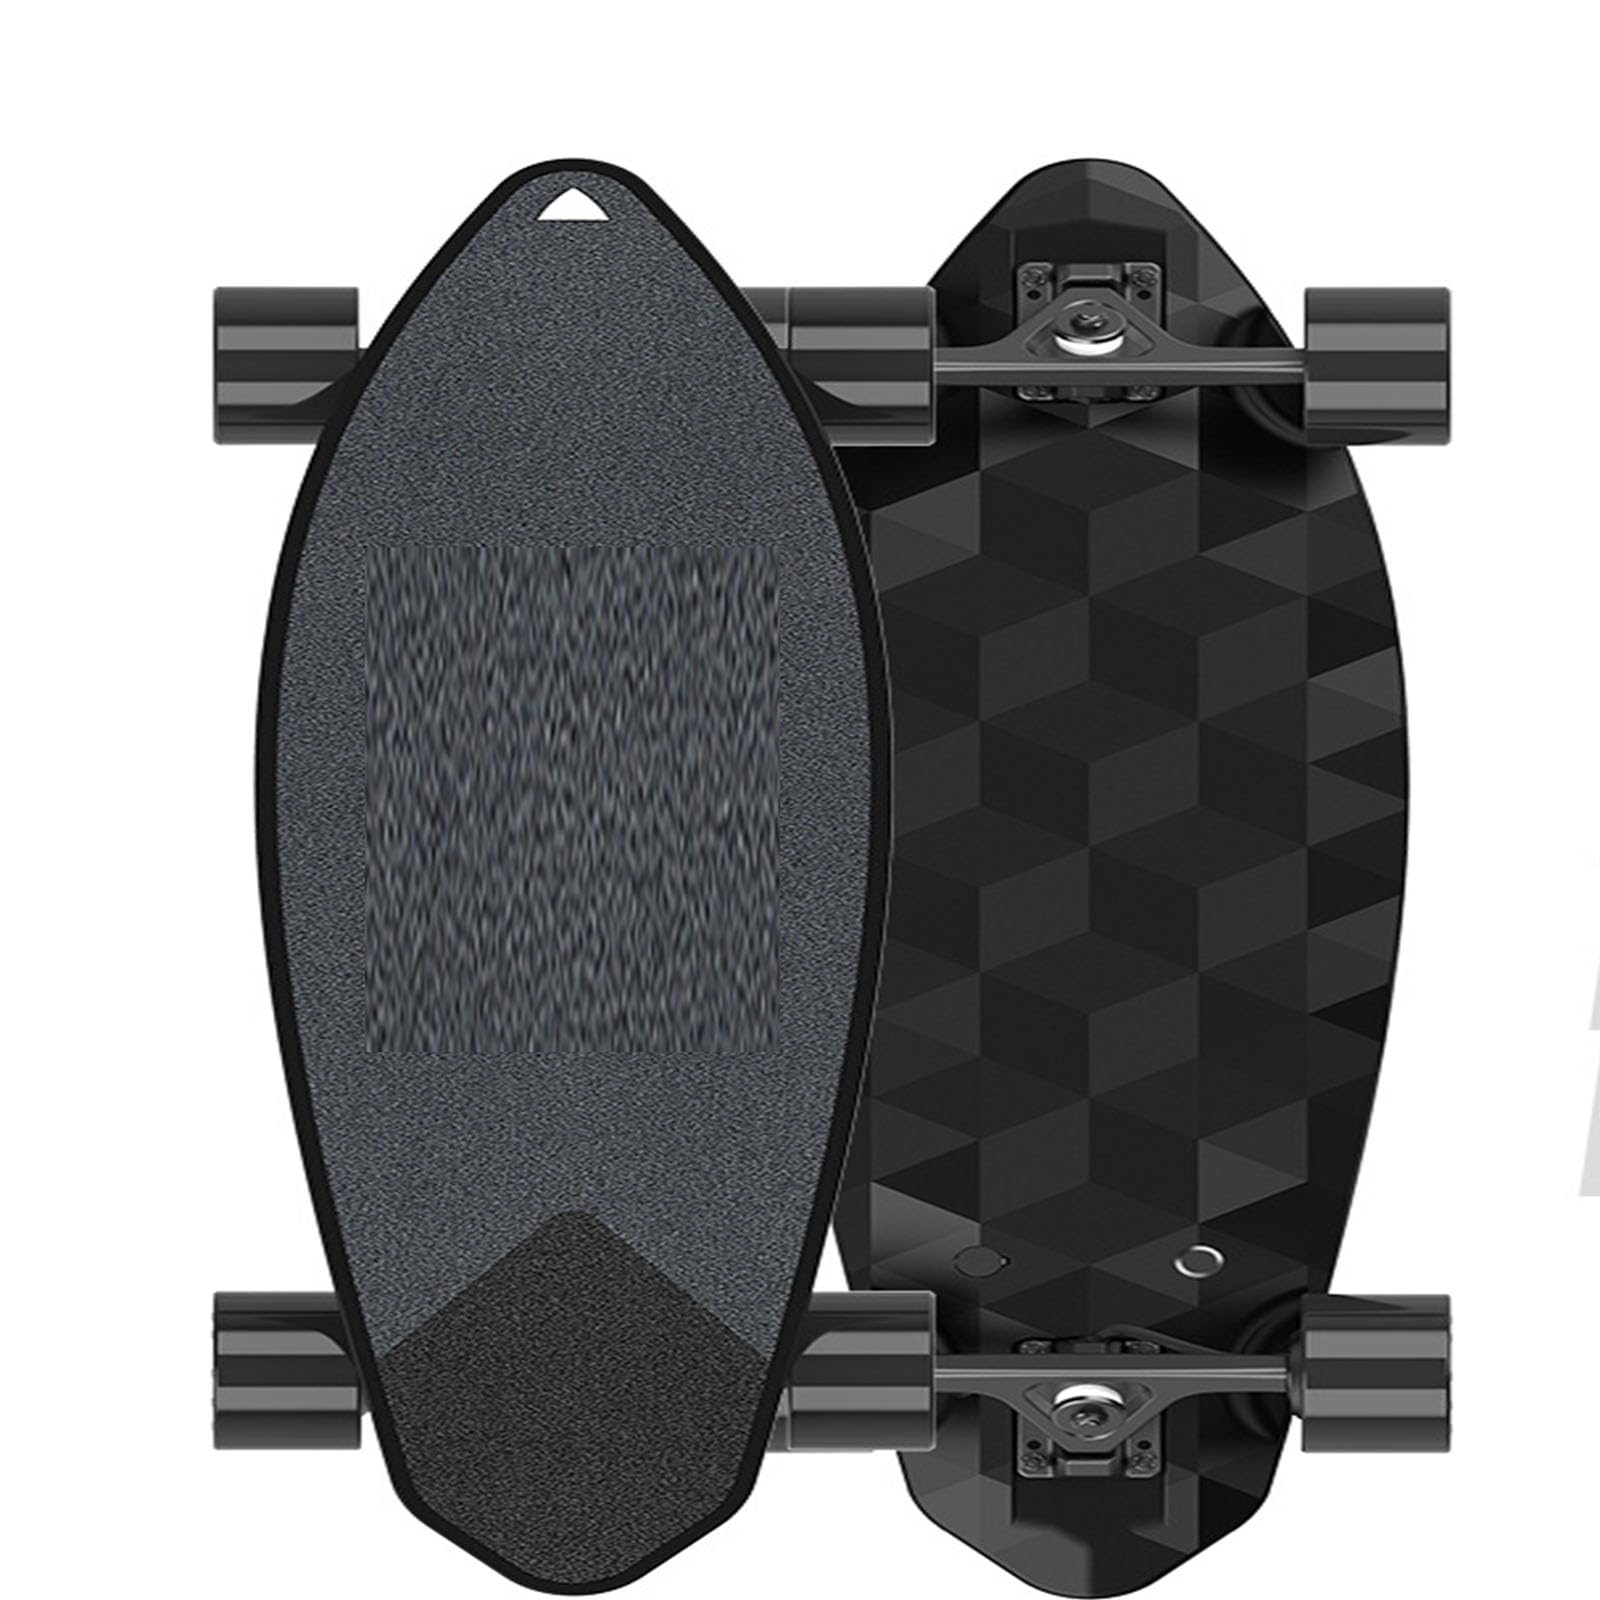 Elektrisches Skateboard für den Transport, superlange Ausdauer, hohe Geschwindigkeit, kein Zittern, doppelschichtiges stoßdämpfendes und elektrisches Skateboard für Erwachsene ( C)